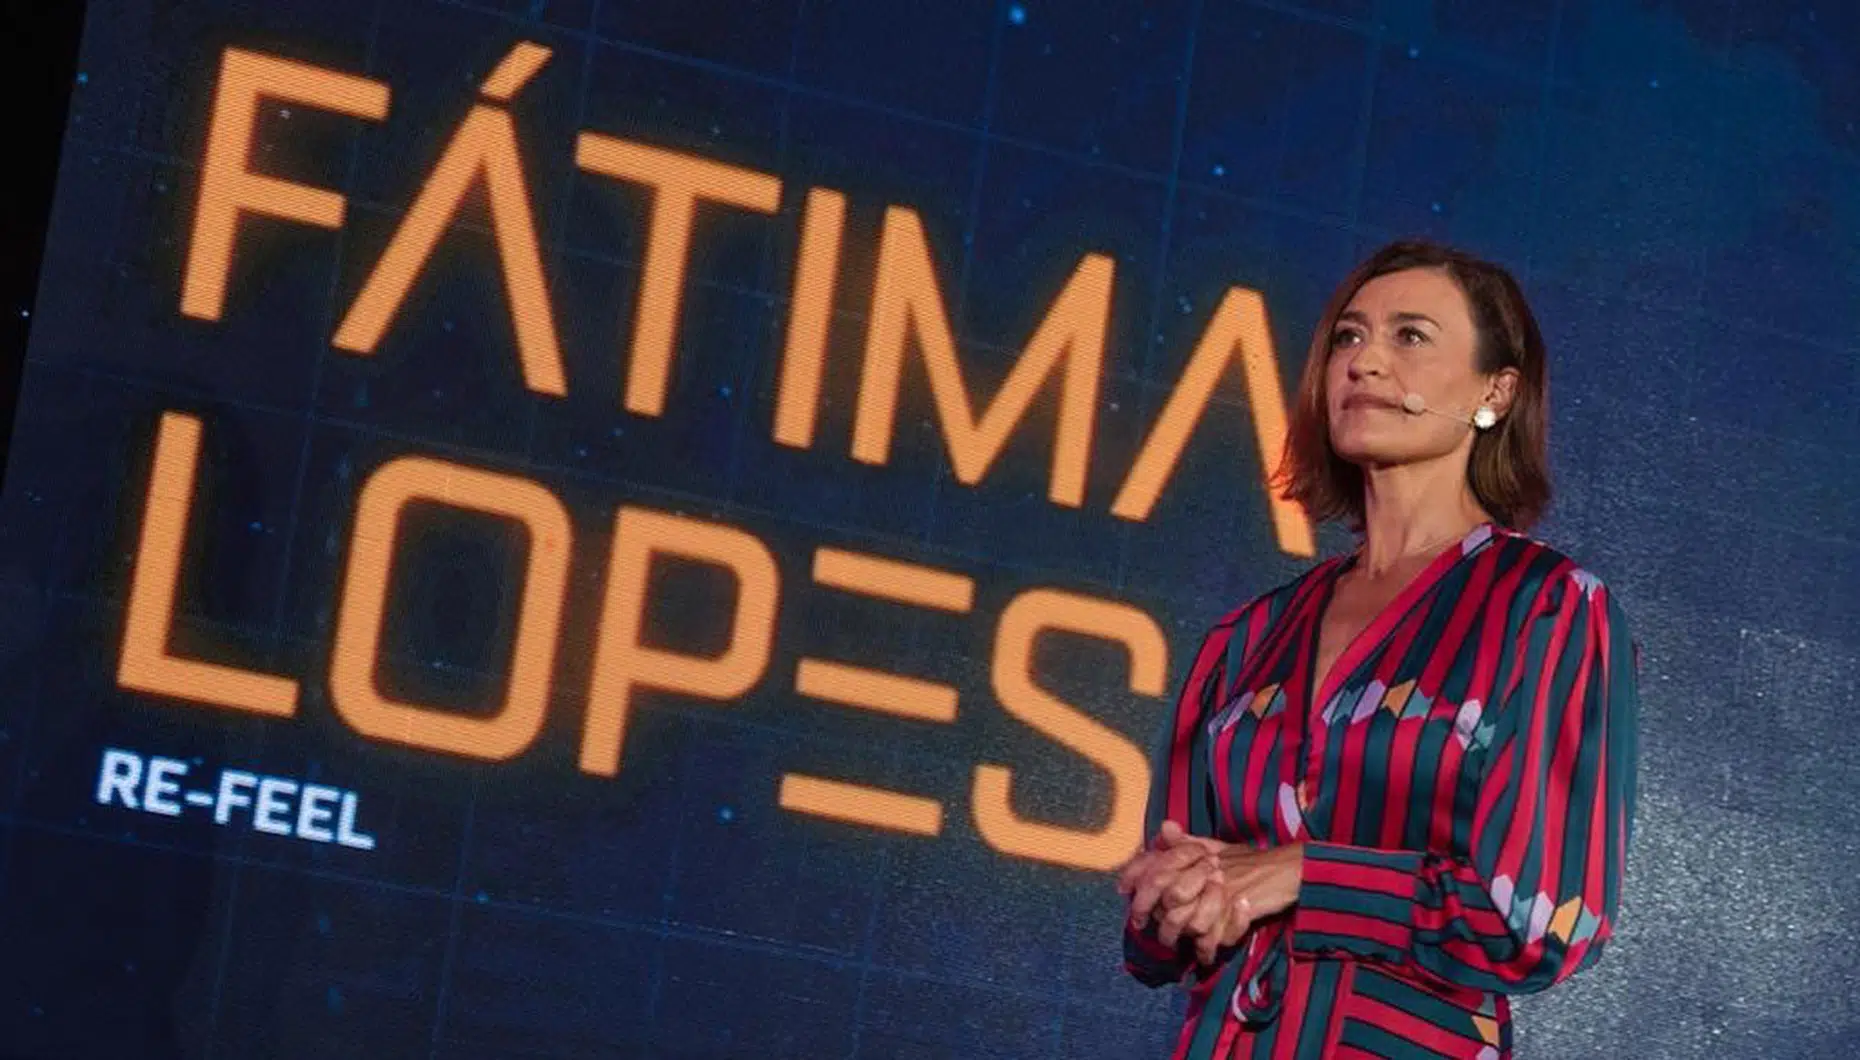 Fátima Lopes, Zome Summit 2021